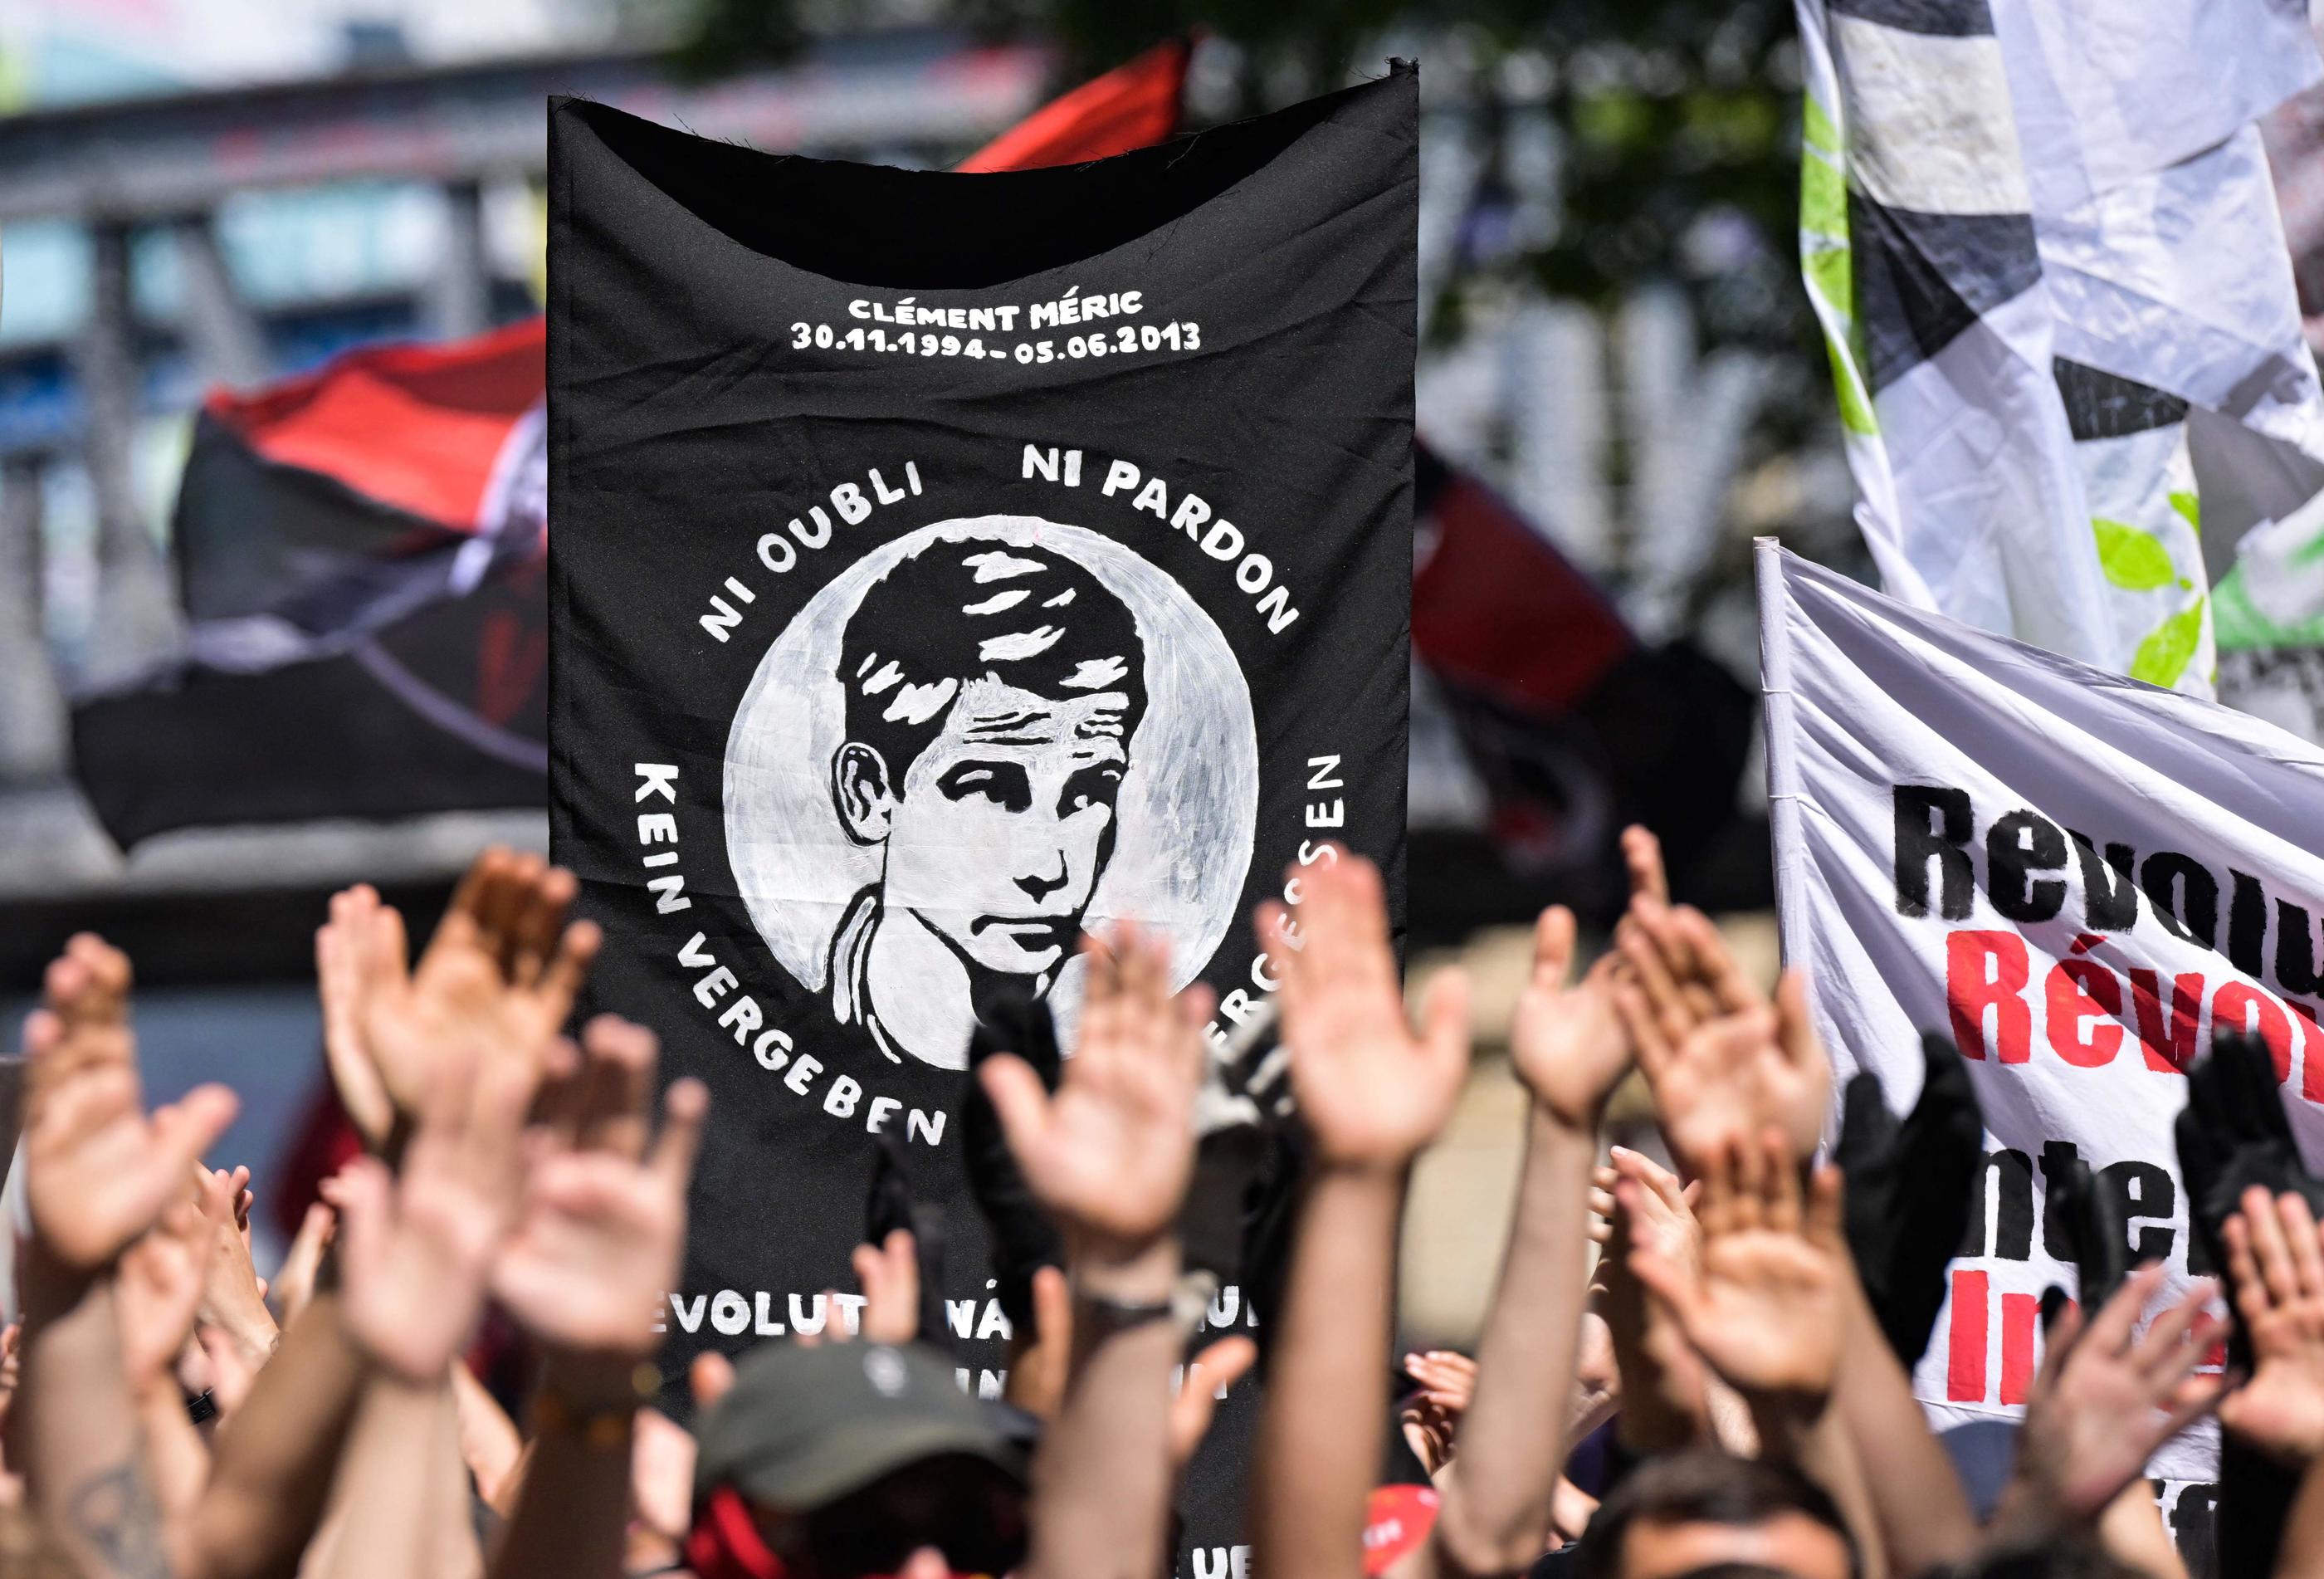 Dix ans après la mort du militant antifasciste Clément Méric en 2013 à la suite d'une rixe avec des skinheads, plusieurs rassemblements sont organisés en sa mémoire, comme ici à Paris, le 4 juin 2023. Alain JOCARD/AFP